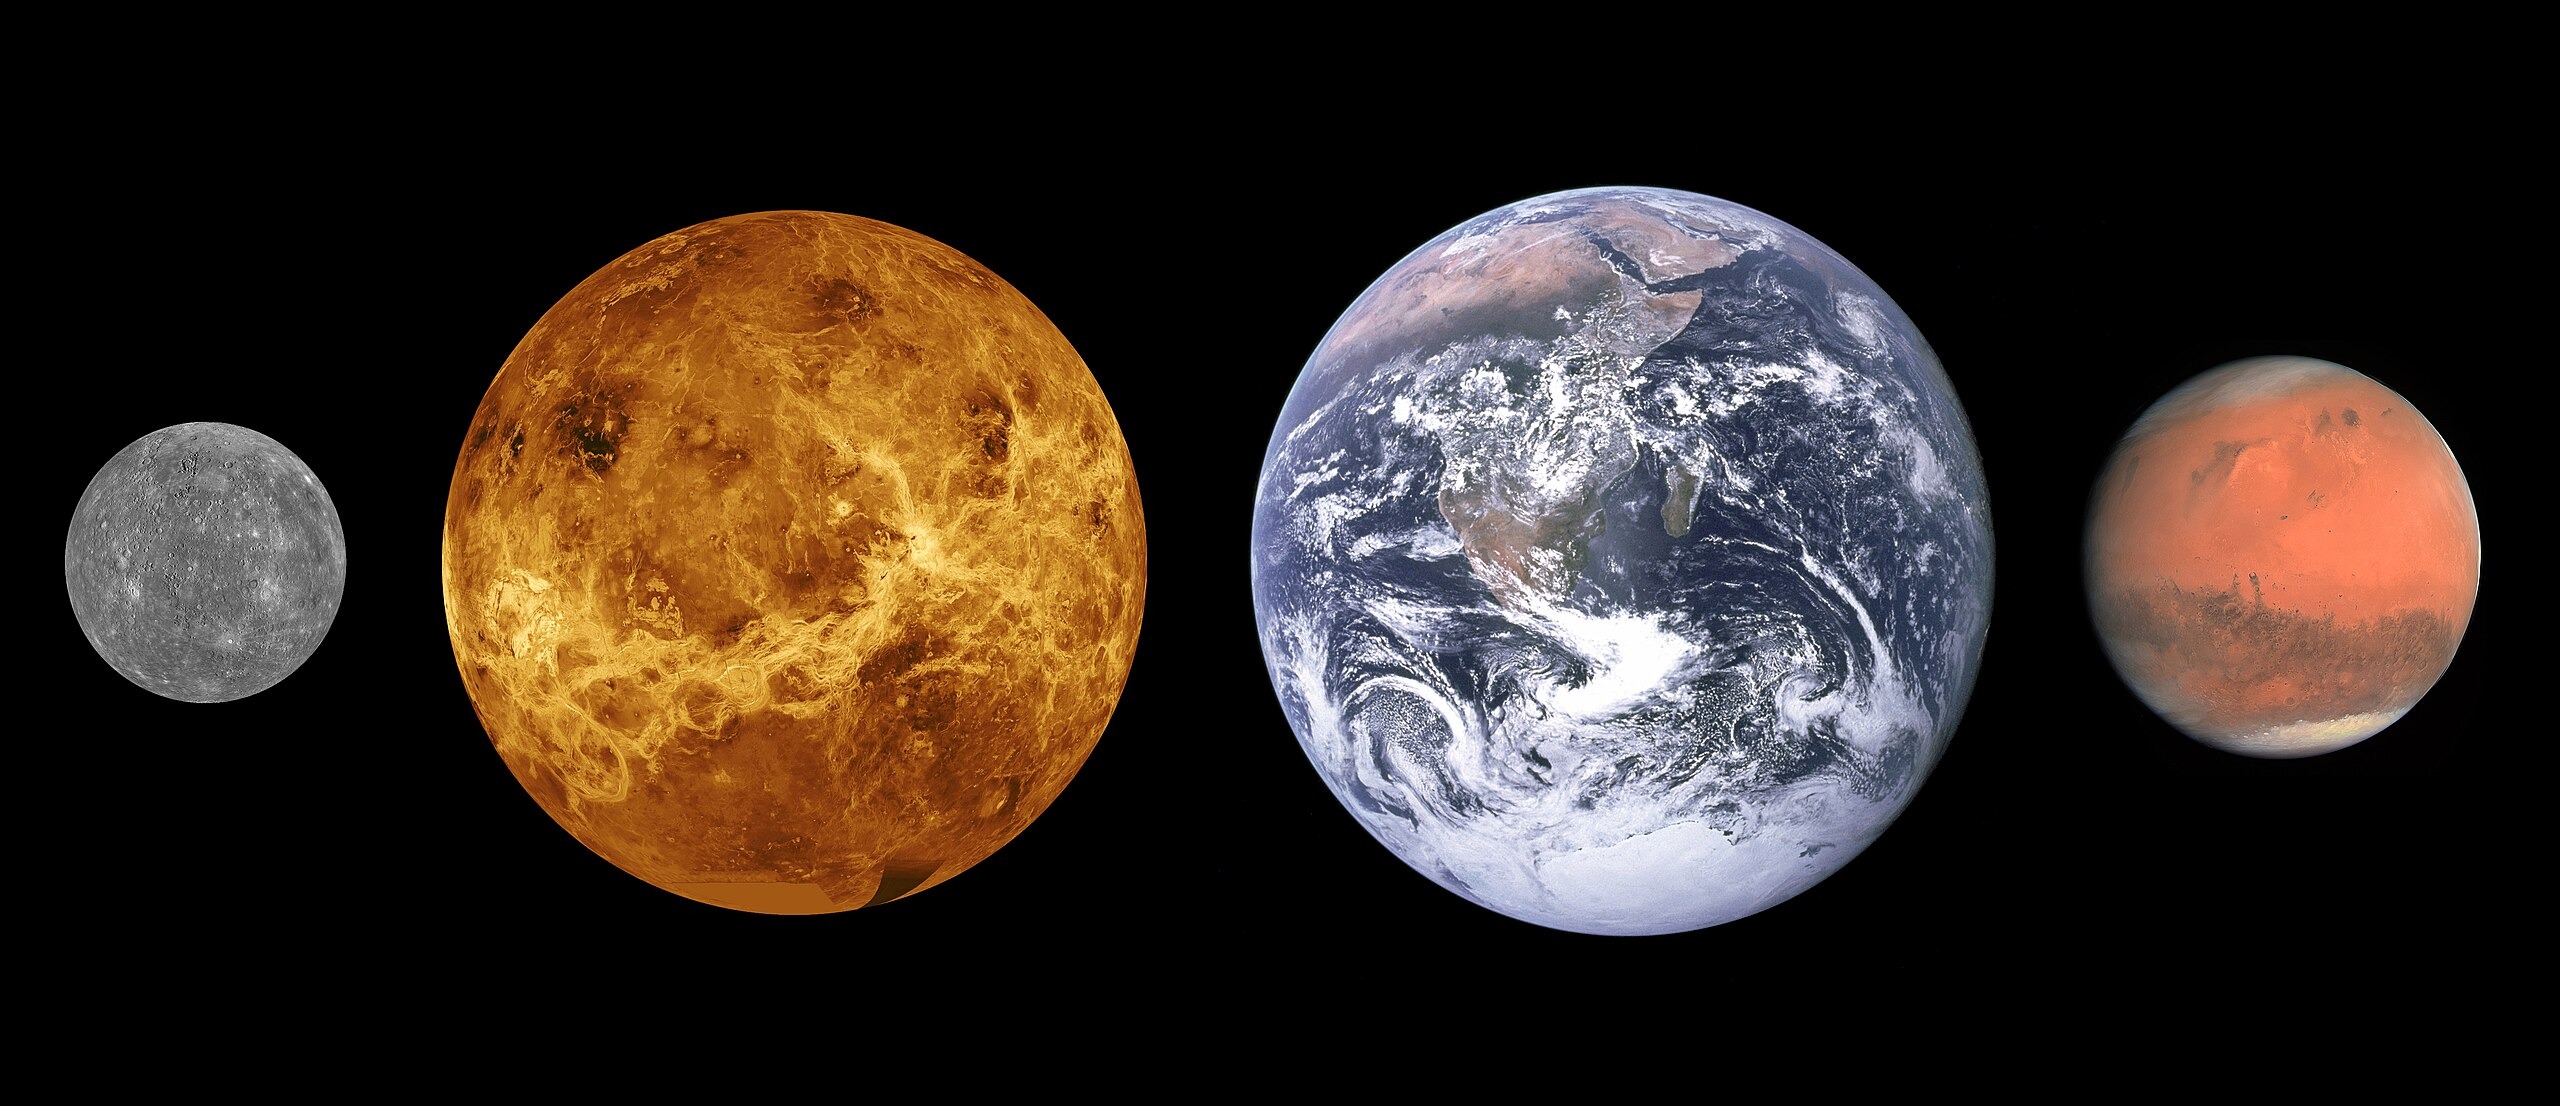 Les planètes telluriques sont principalement composées de roches et de métaux et ont une densité relativement élevée, une rotation lente, une surface solide, pas d'anneaux et peu de satellites (Mercure, Vénus, la Terre, et Mars par exemple). Image de Mercure : NASA/JHUAPL ; Image de Vénus : NASA ; Image de la Terre : NASA/équipage Apollo 17 ; Image de Mars : ESA/MPS/UPD/LAM/IAA/RSSD/INTA/UPM/DASP/IDA, Wikimedia Commons, CC BY-SA 3.0 IGO.